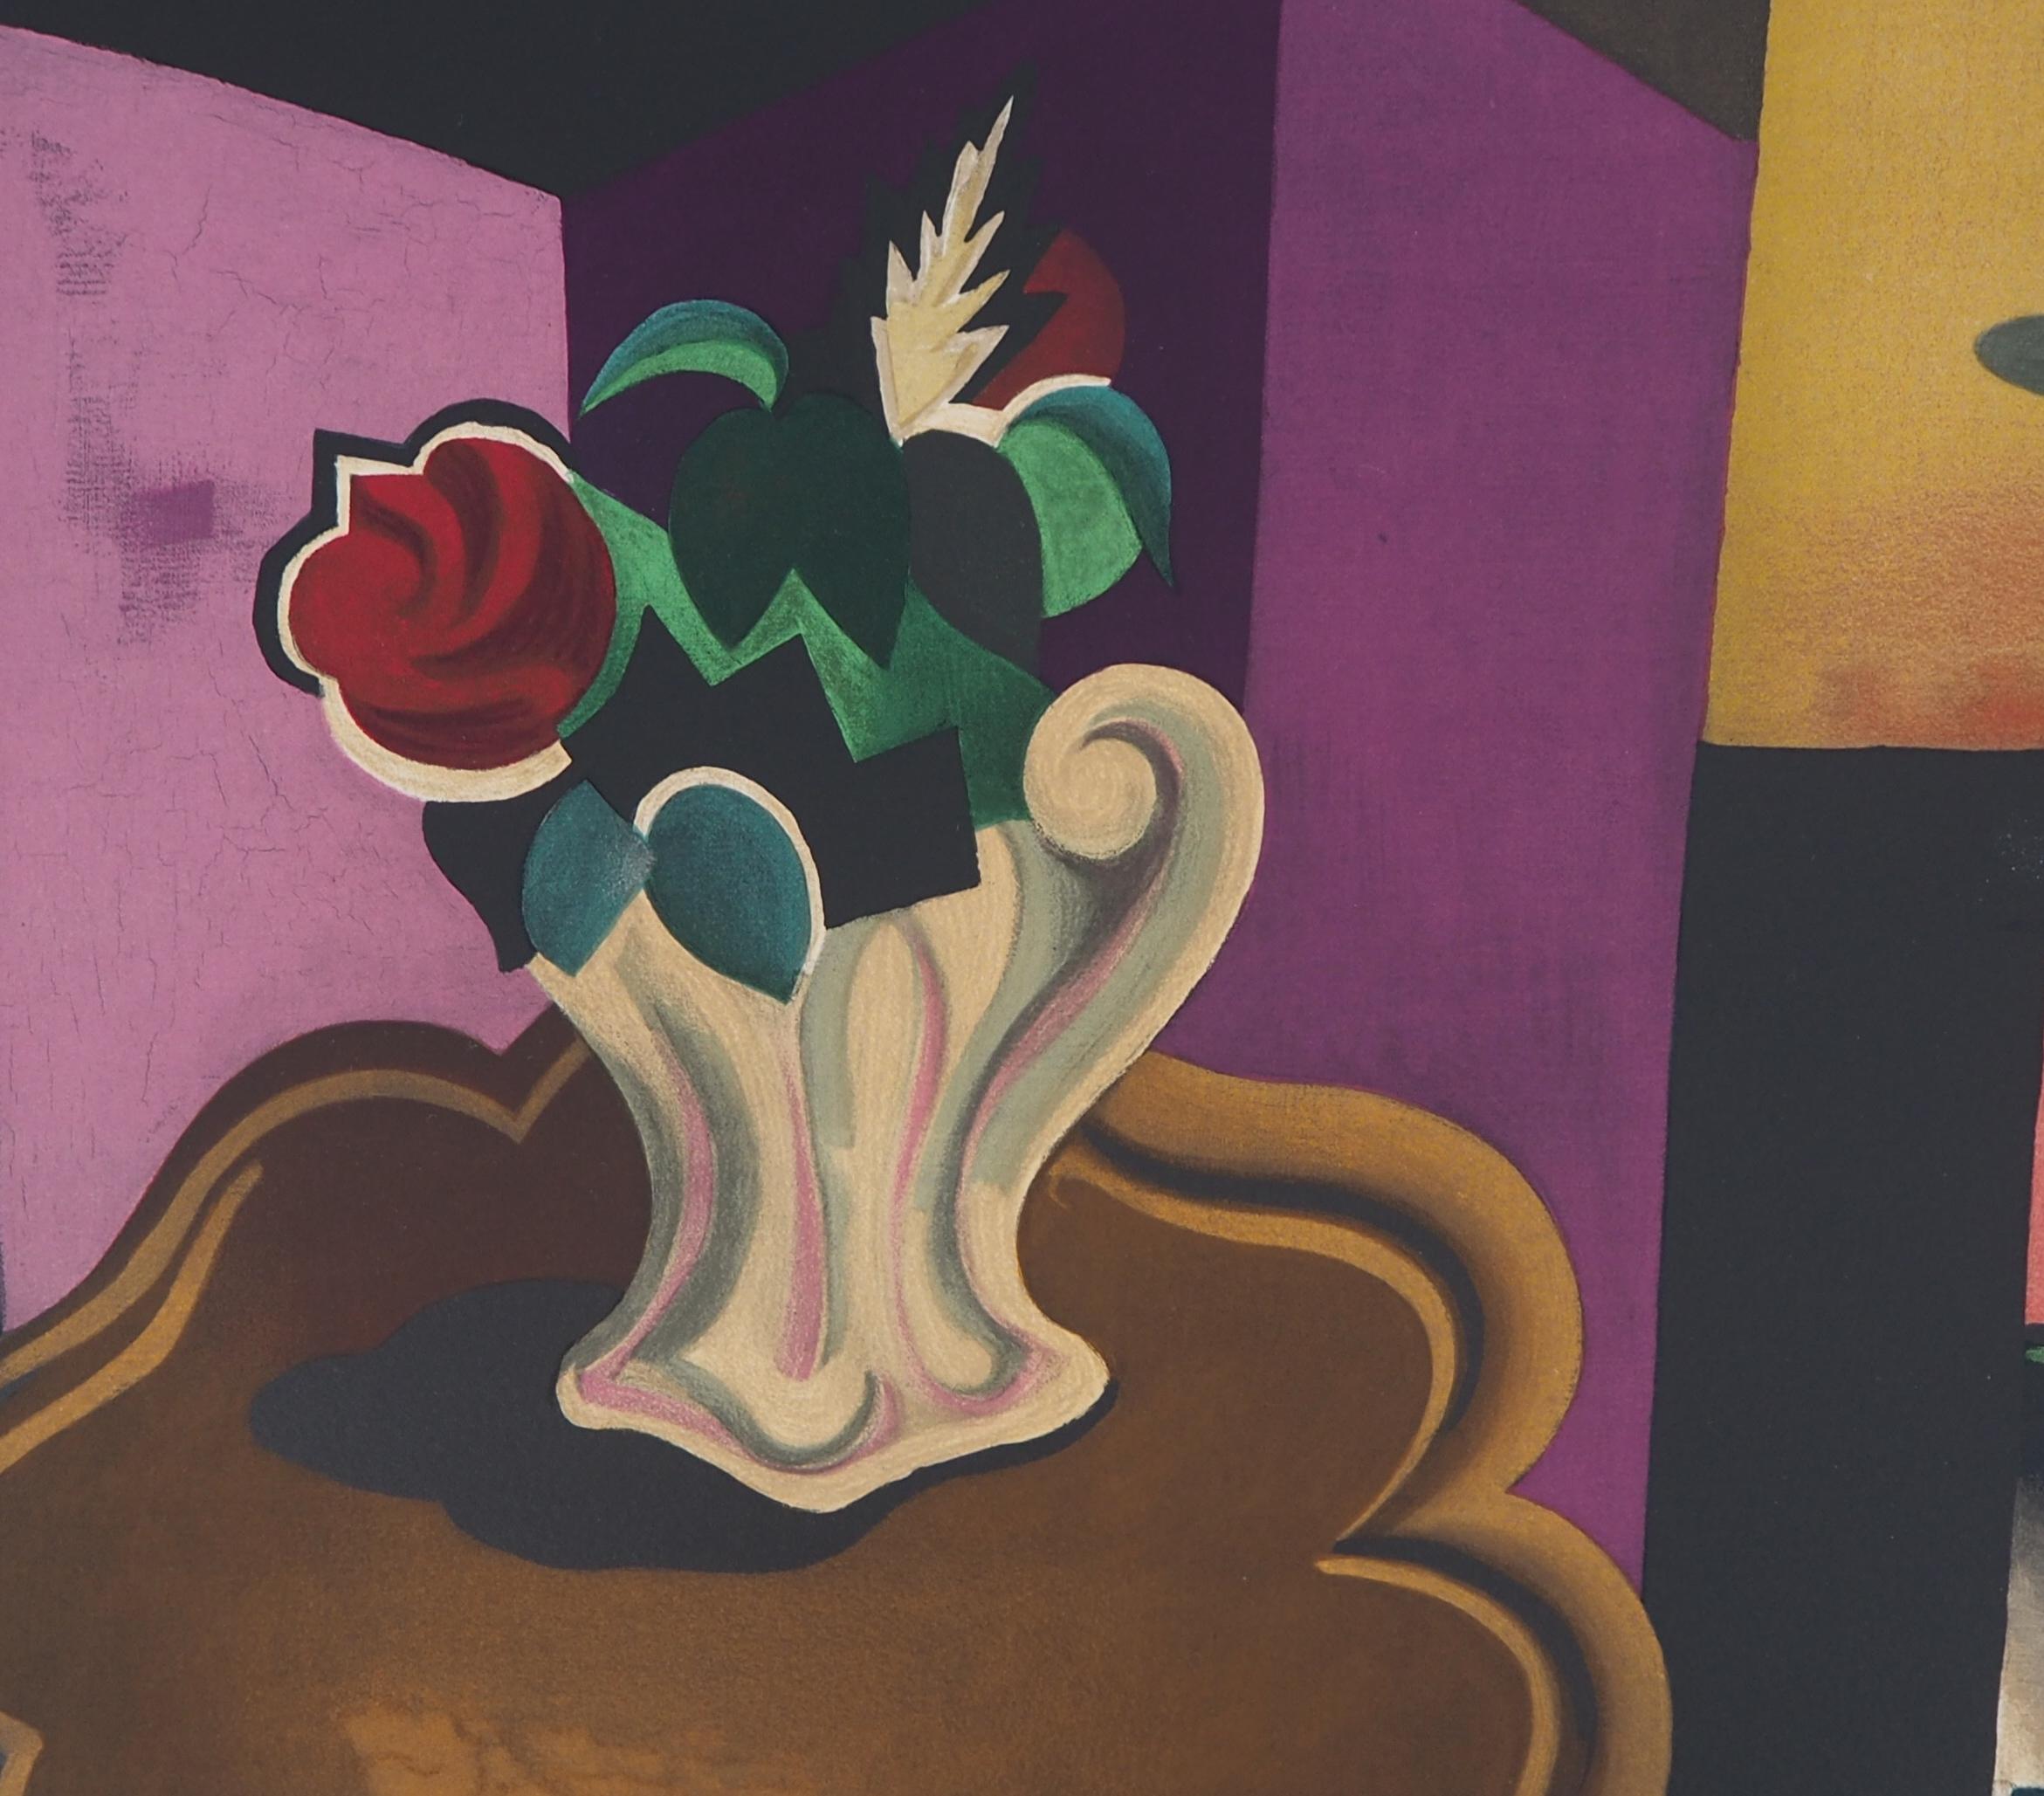 Roger de la Fresnaye
Kubistisches Interieur mit Rosenstrauß

Steinlithographie nach einem Gemälde
Gedruckt in der Werkstatt Mourlot
Gedruckte Unterschrift auf der Platte
Auf Arches Vellum 50 x 65 cm (ca. 20 x 26 inch)

Ausgezeichneter Zustand